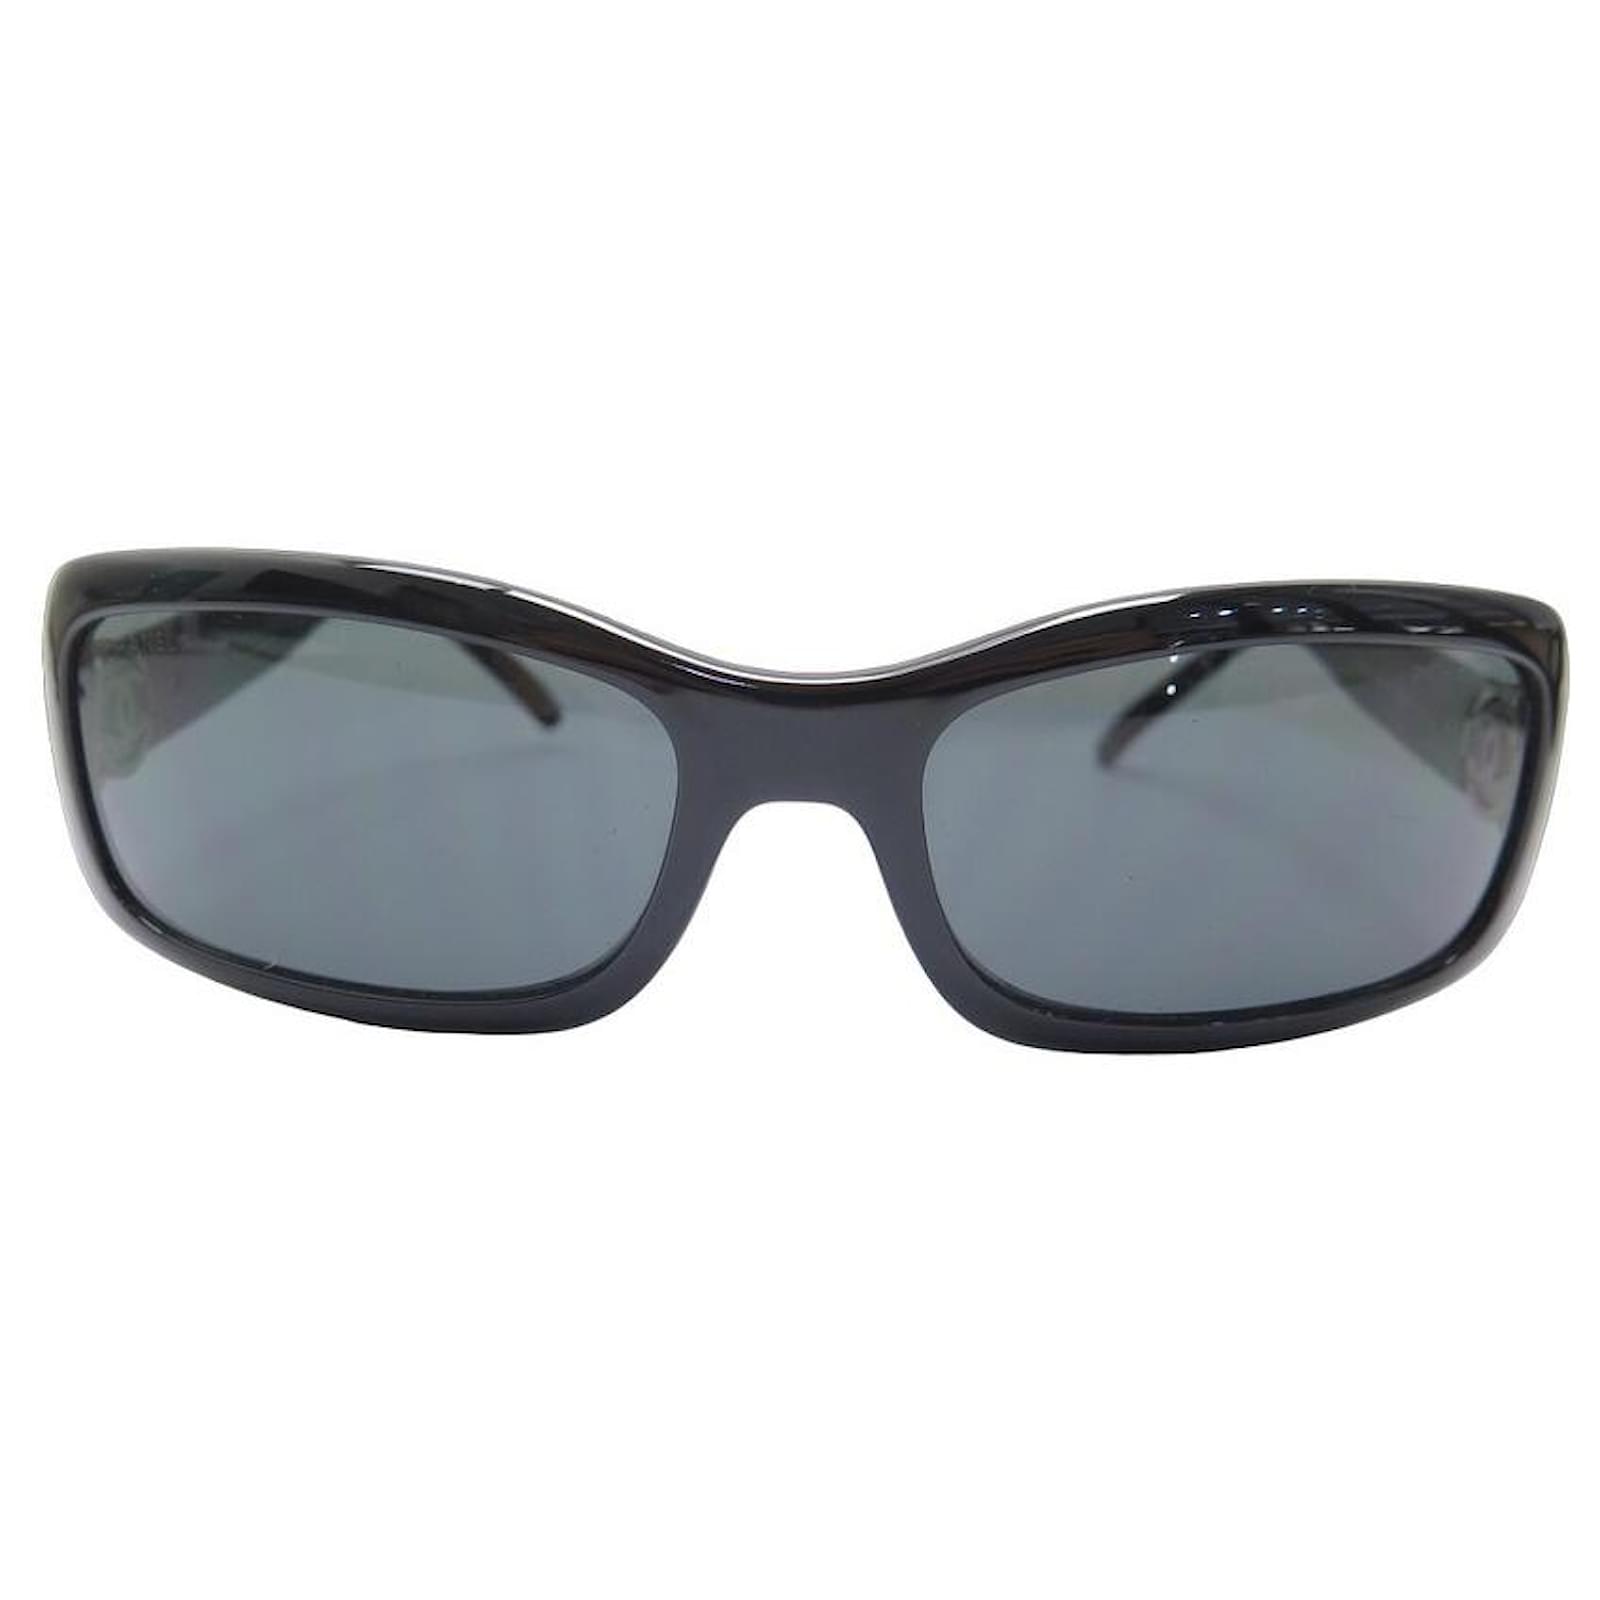 Men's Chanel Sunglasses for Men, Vintage Chanel Glasses